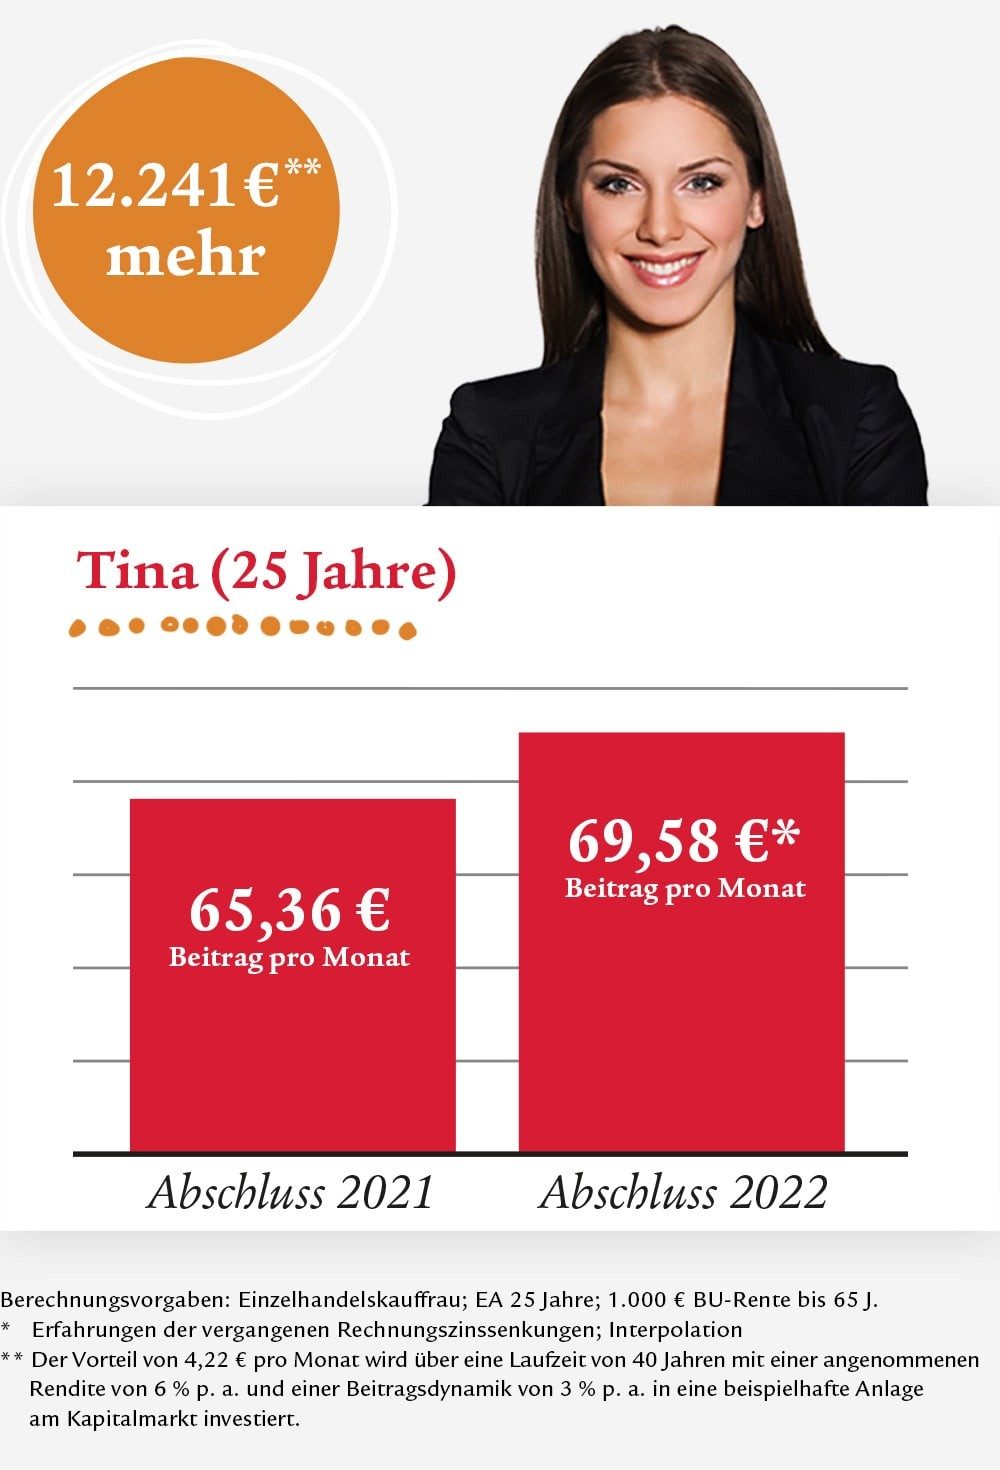 Tina, 25 Jahre kann ca. 12.000 Euro mehr Geld bekommen durch den Rechnungszins